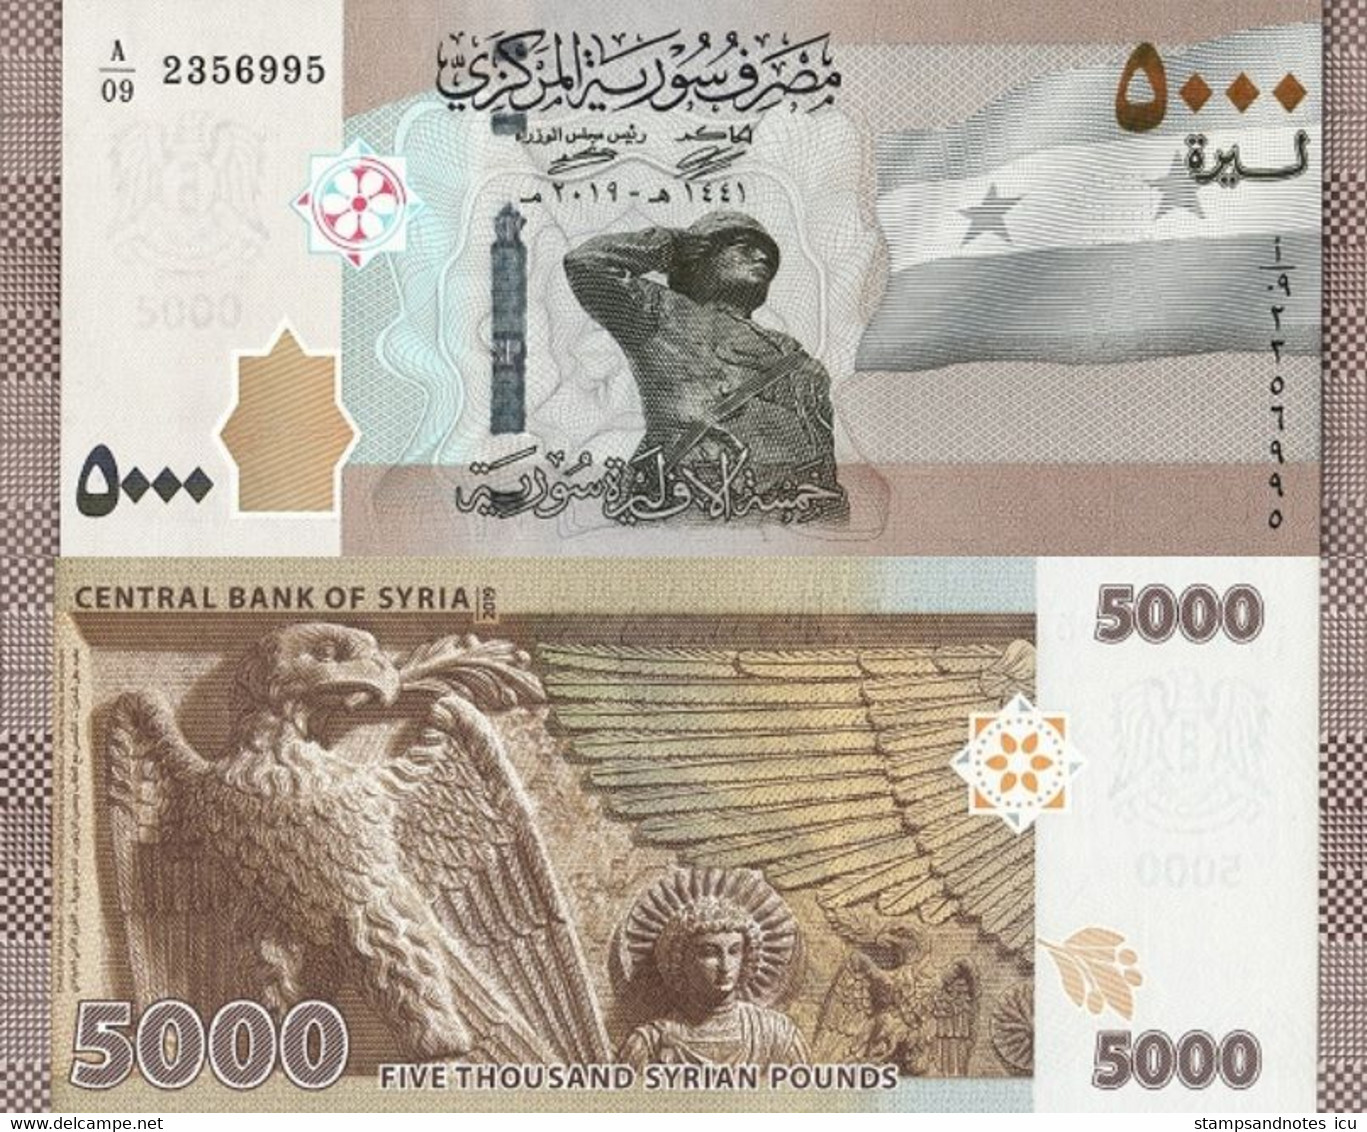 5000 riyal in indian rupees